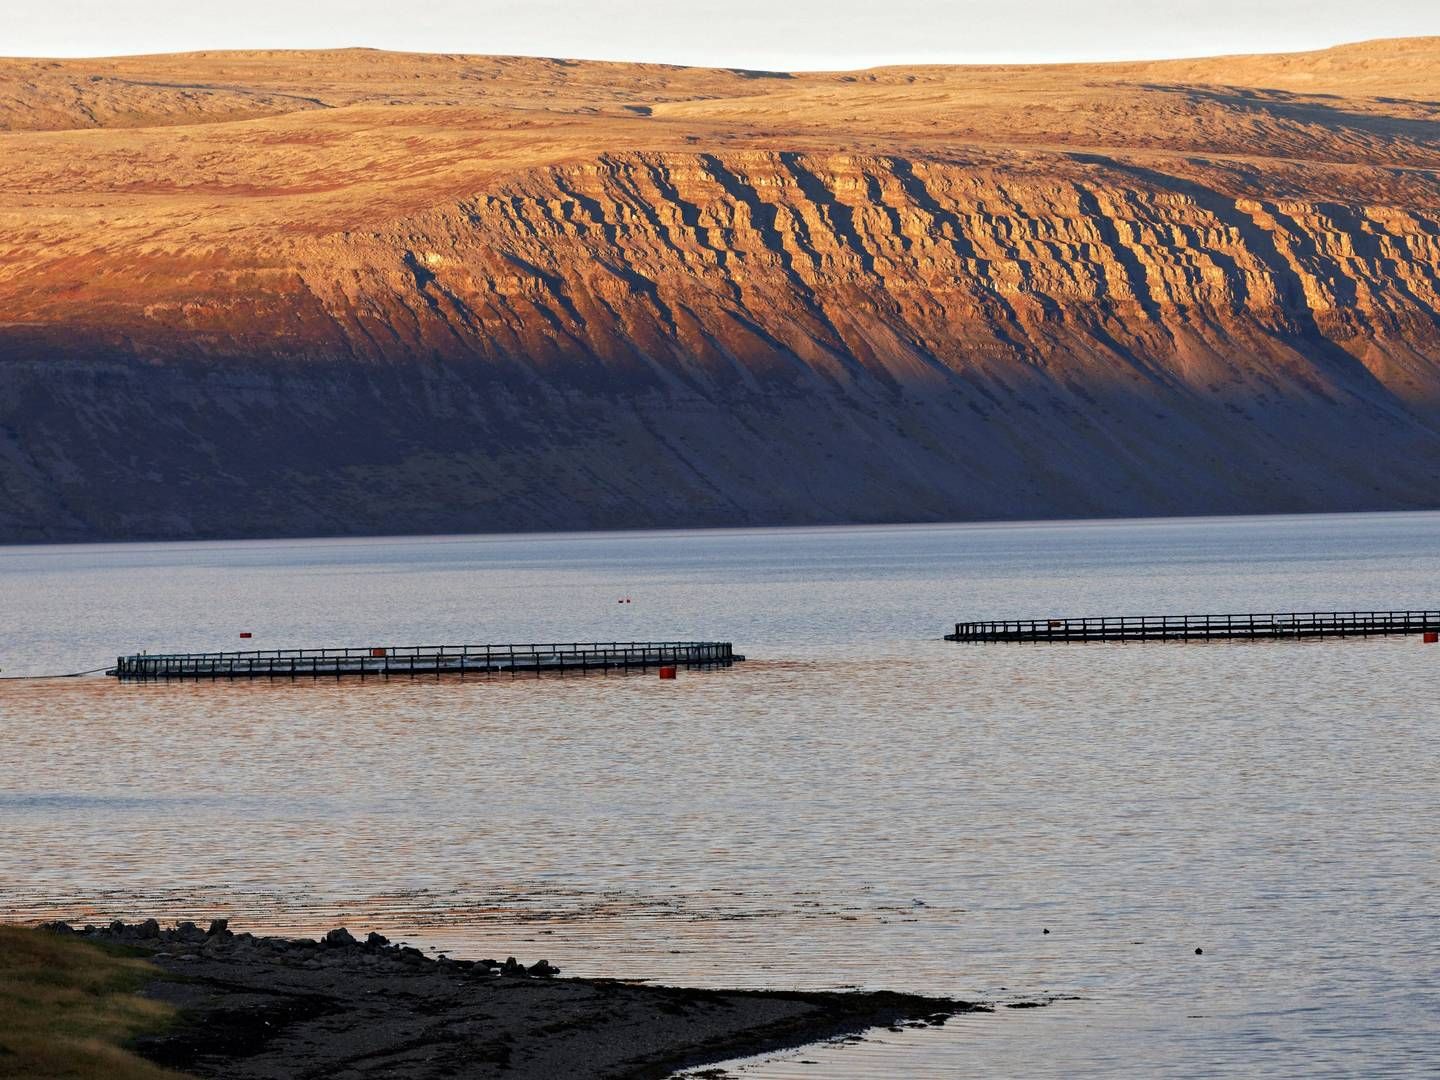 Fra vandet til landet. Islands næste lakseopdræt bygges nu på land og skal kunne rumme en produktion på 24.000 ton laks årligt på sigt. | Foto: Paul Mayall/AP/Ritzau Scanpix